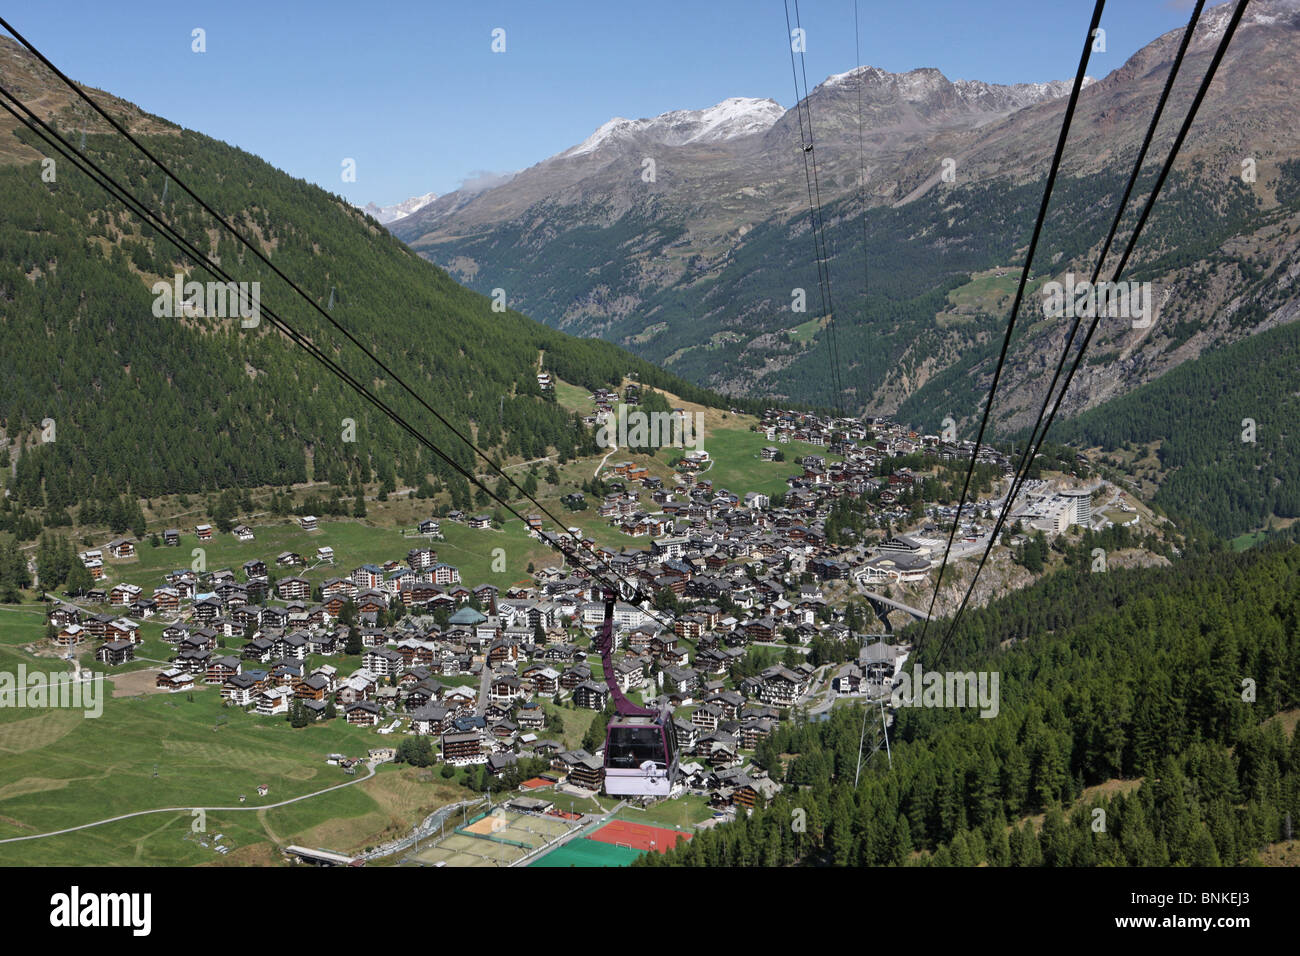 Suiza Saas Fee aldea lugar cantón Valais mountain road góndola verano turismo paisaje valle Foto de stock